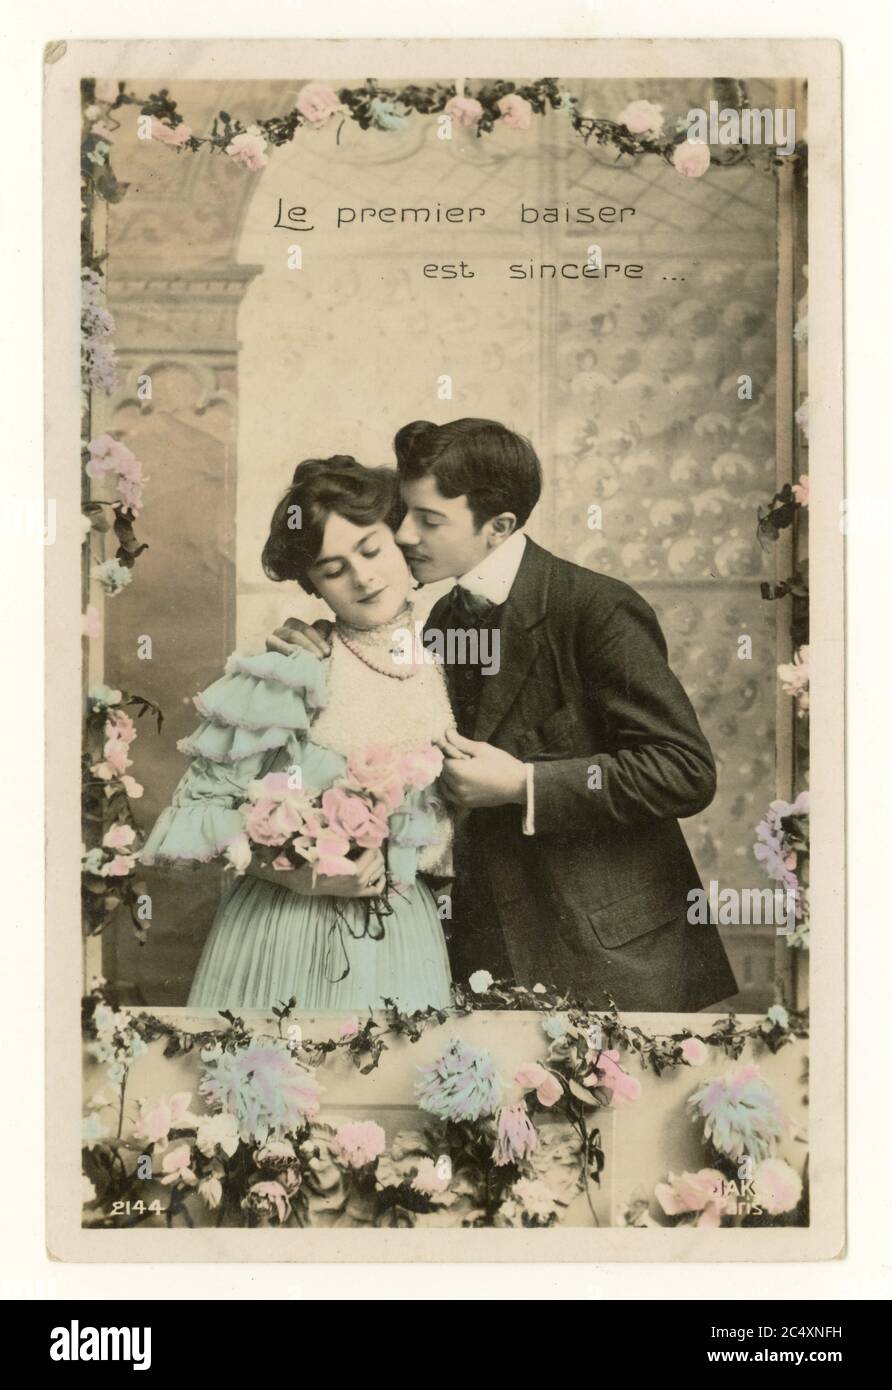 Carte de voeux teintée sentimentale française du début des années 1900 - deux jeunes amants, timide fille 'le premier baiser est sincère', France, vers 1911 Banque D'Images